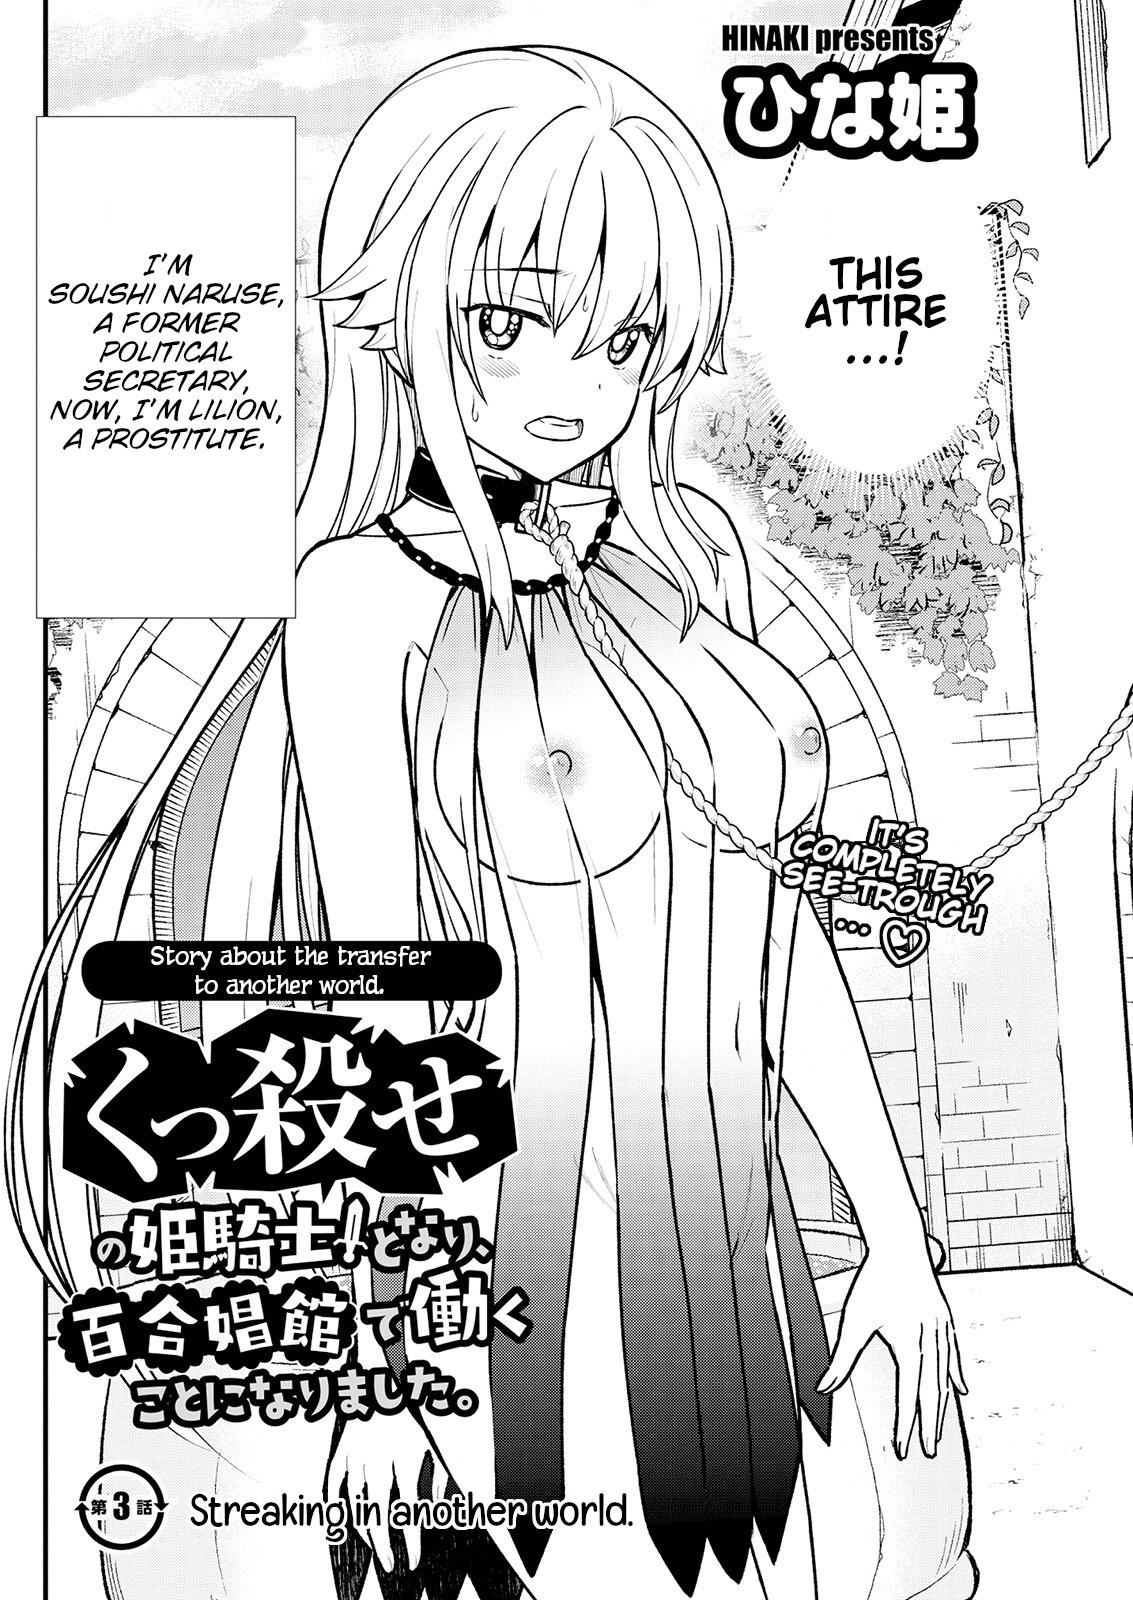 Spy Kukkorose no Himekishi to nari, Yuri Shoukan de Hataraku koto ni Narimashita. 3 | Becoming Princess Knight and Working at Yuri Brothel 3 Vecina - Page 4